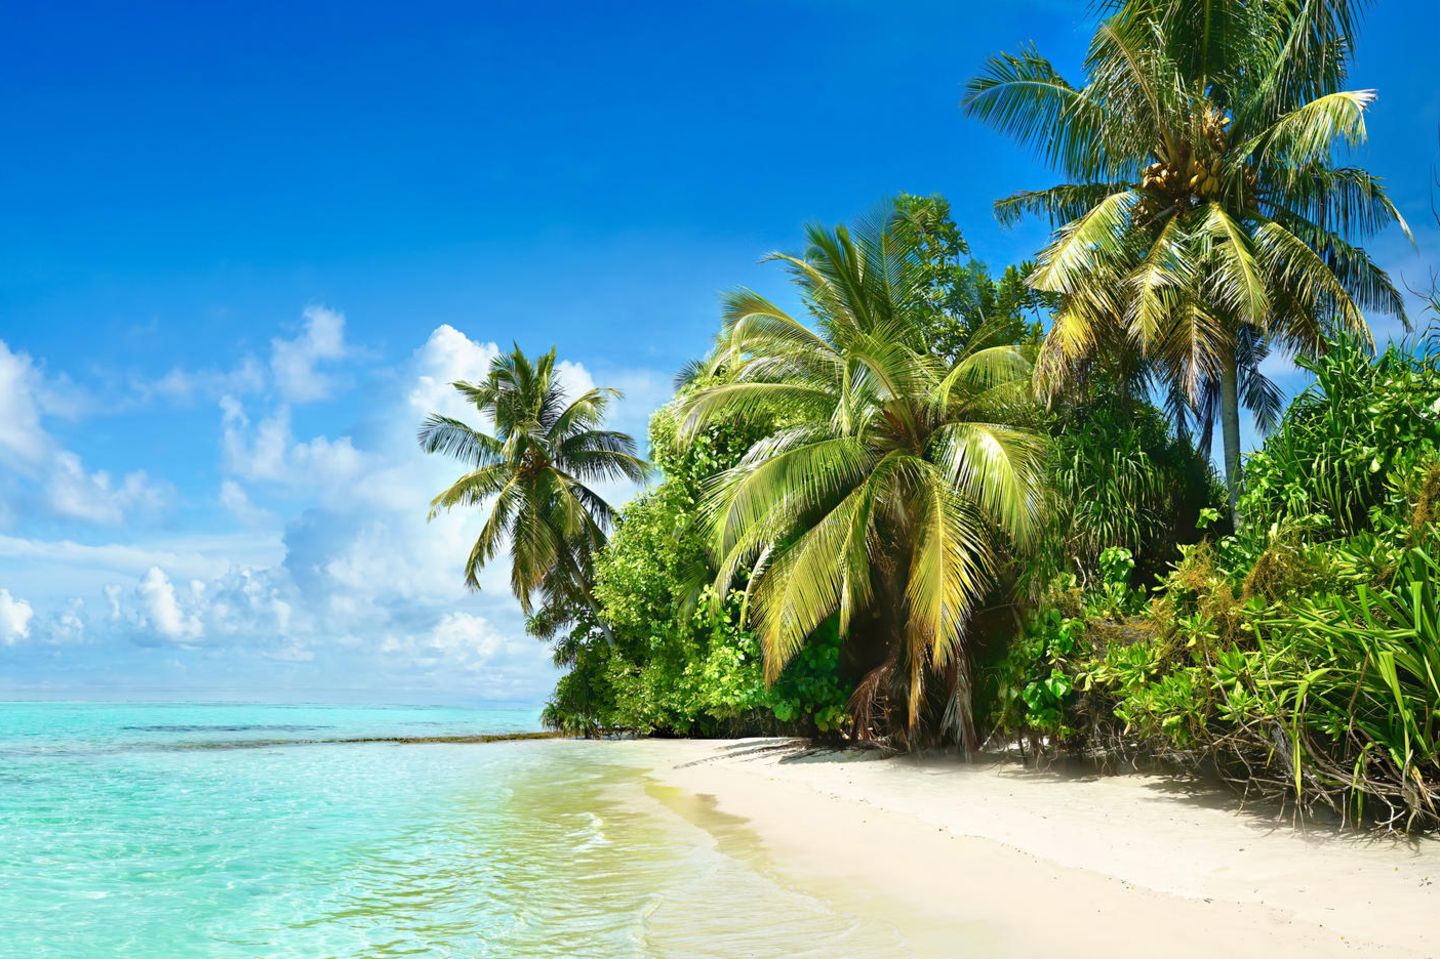 Strand mit Palmen auf den Malediven: Alles wird teurer? Diese 3 Luxusreiseziele sind sogar günstiger geworden